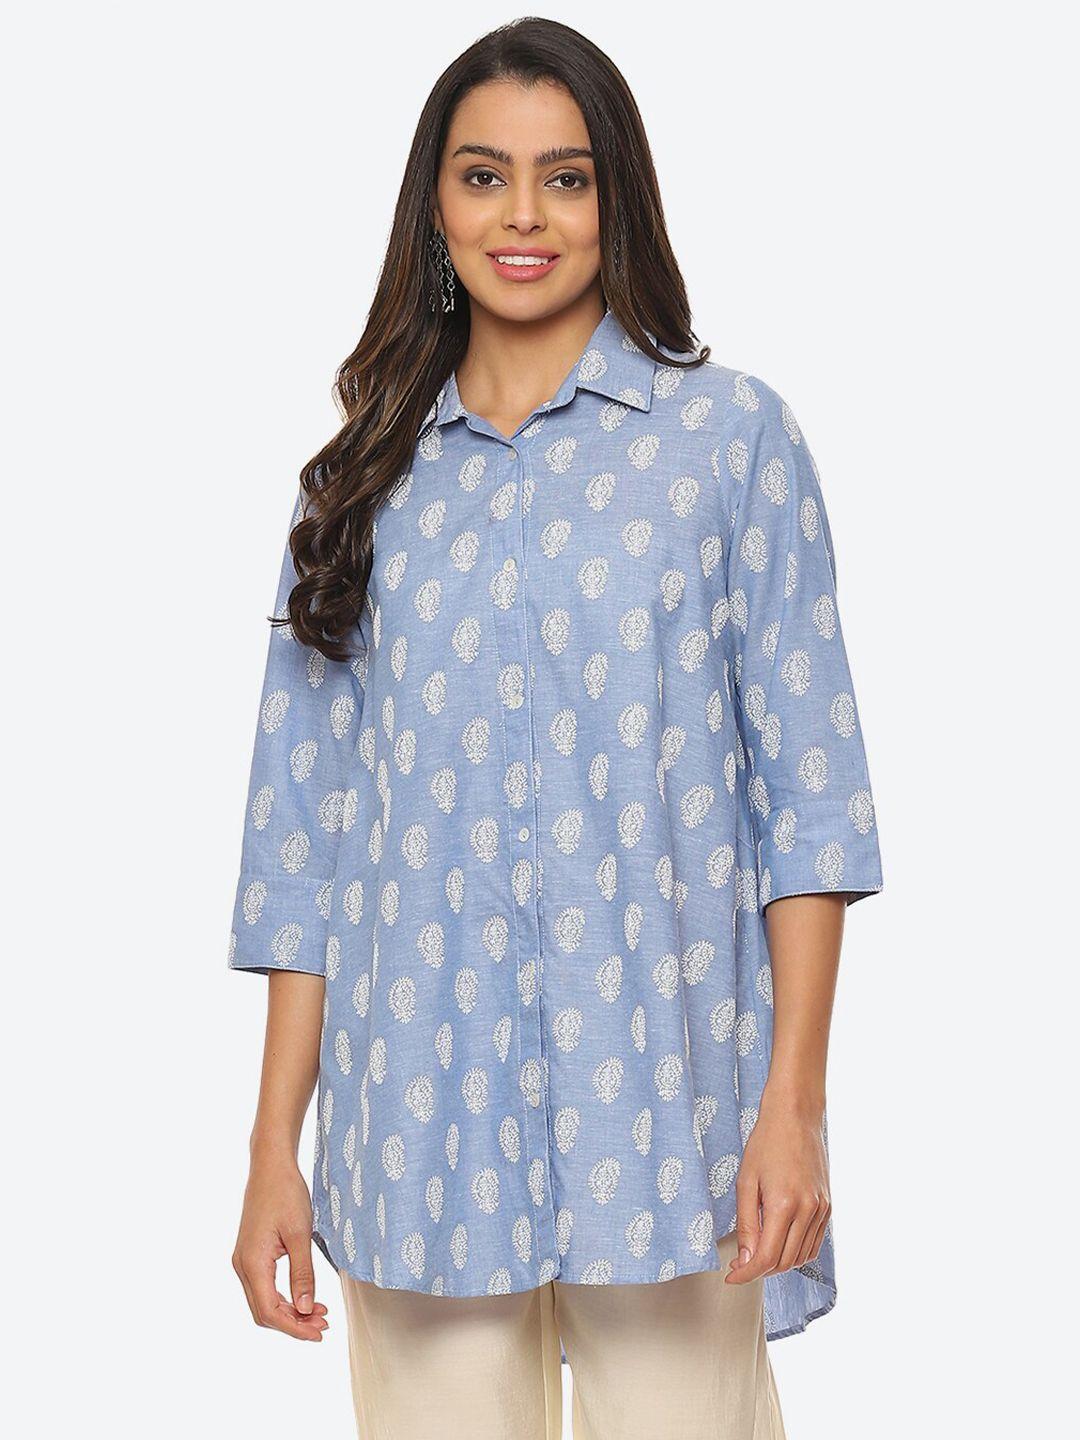 biba-plus-size-print-shirt-style-longline-cotton-top